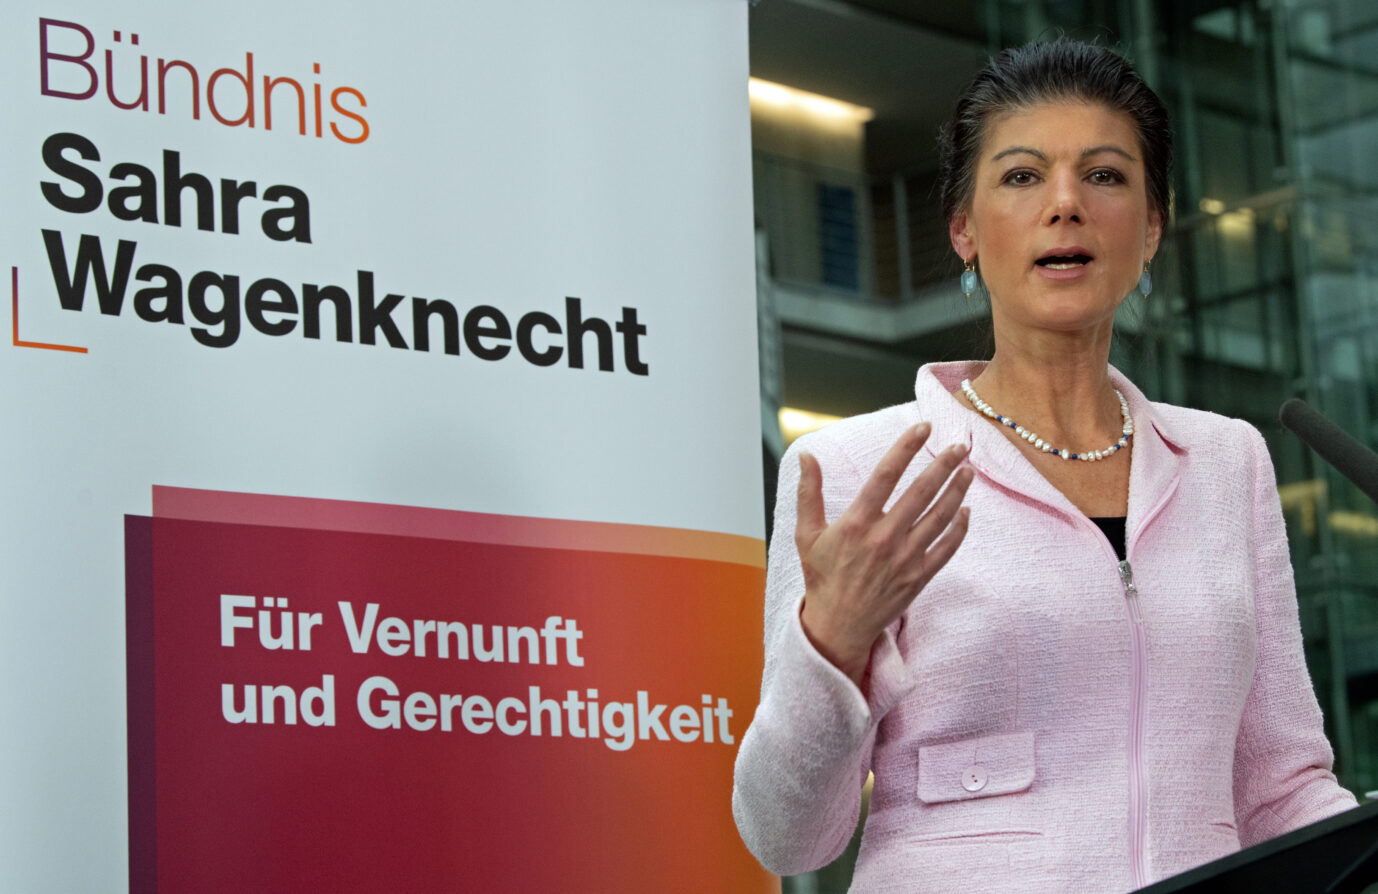 Die BSW-Vorsitzende Sahra Wagenknecht bei einem Pressetermin im Paul-Löbe-Haus: Steile Karriere gegen alle Widerstände.